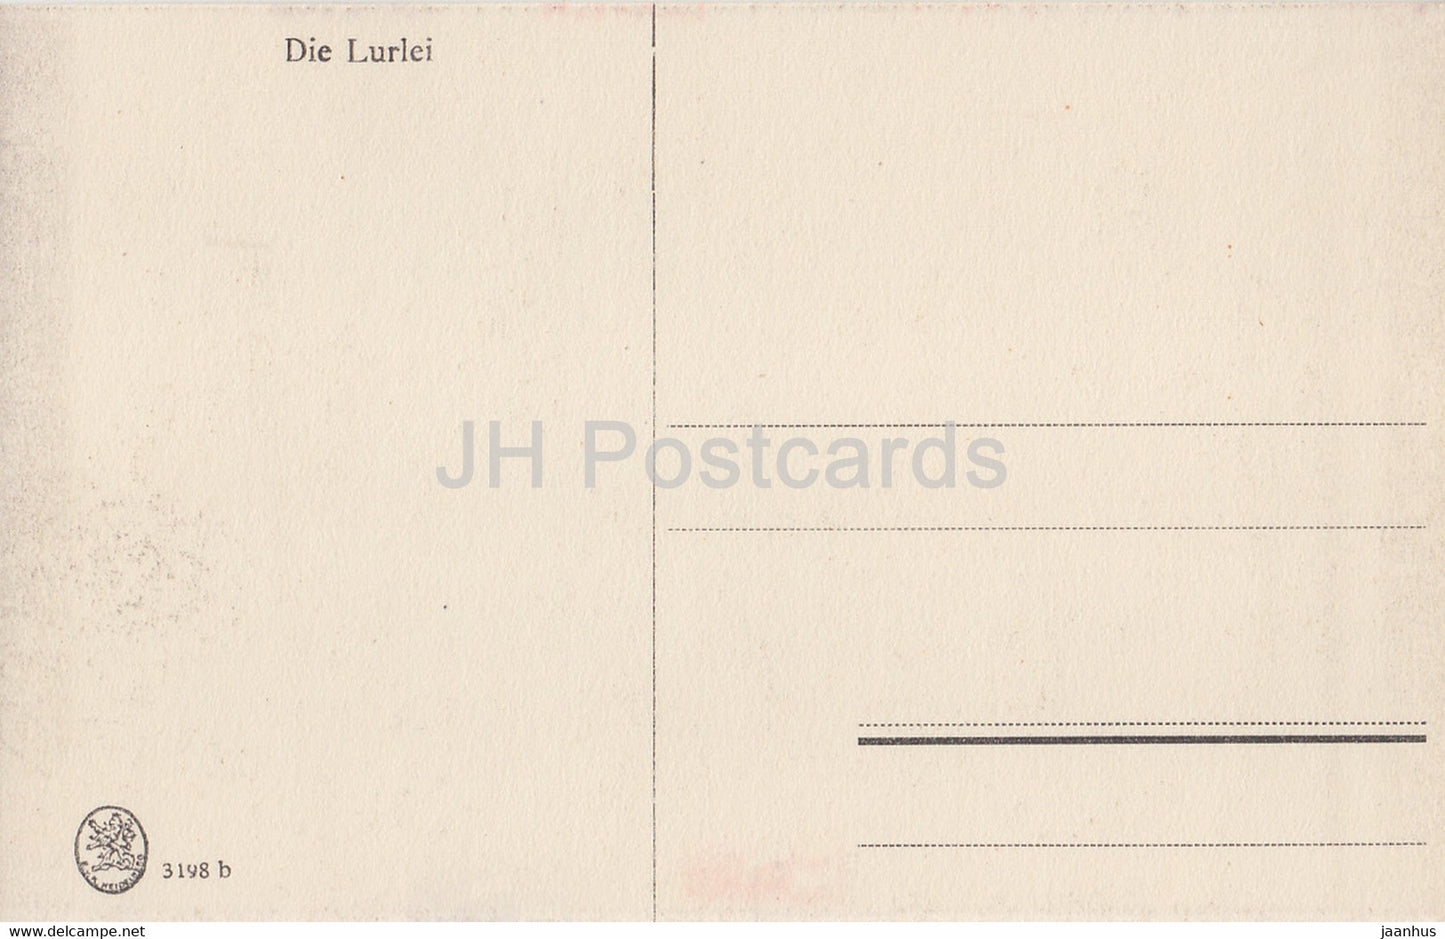 Die Lurlei - navire - bateau à vapeur - 3198 - carte postale ancienne - Allemagne - inutilisé